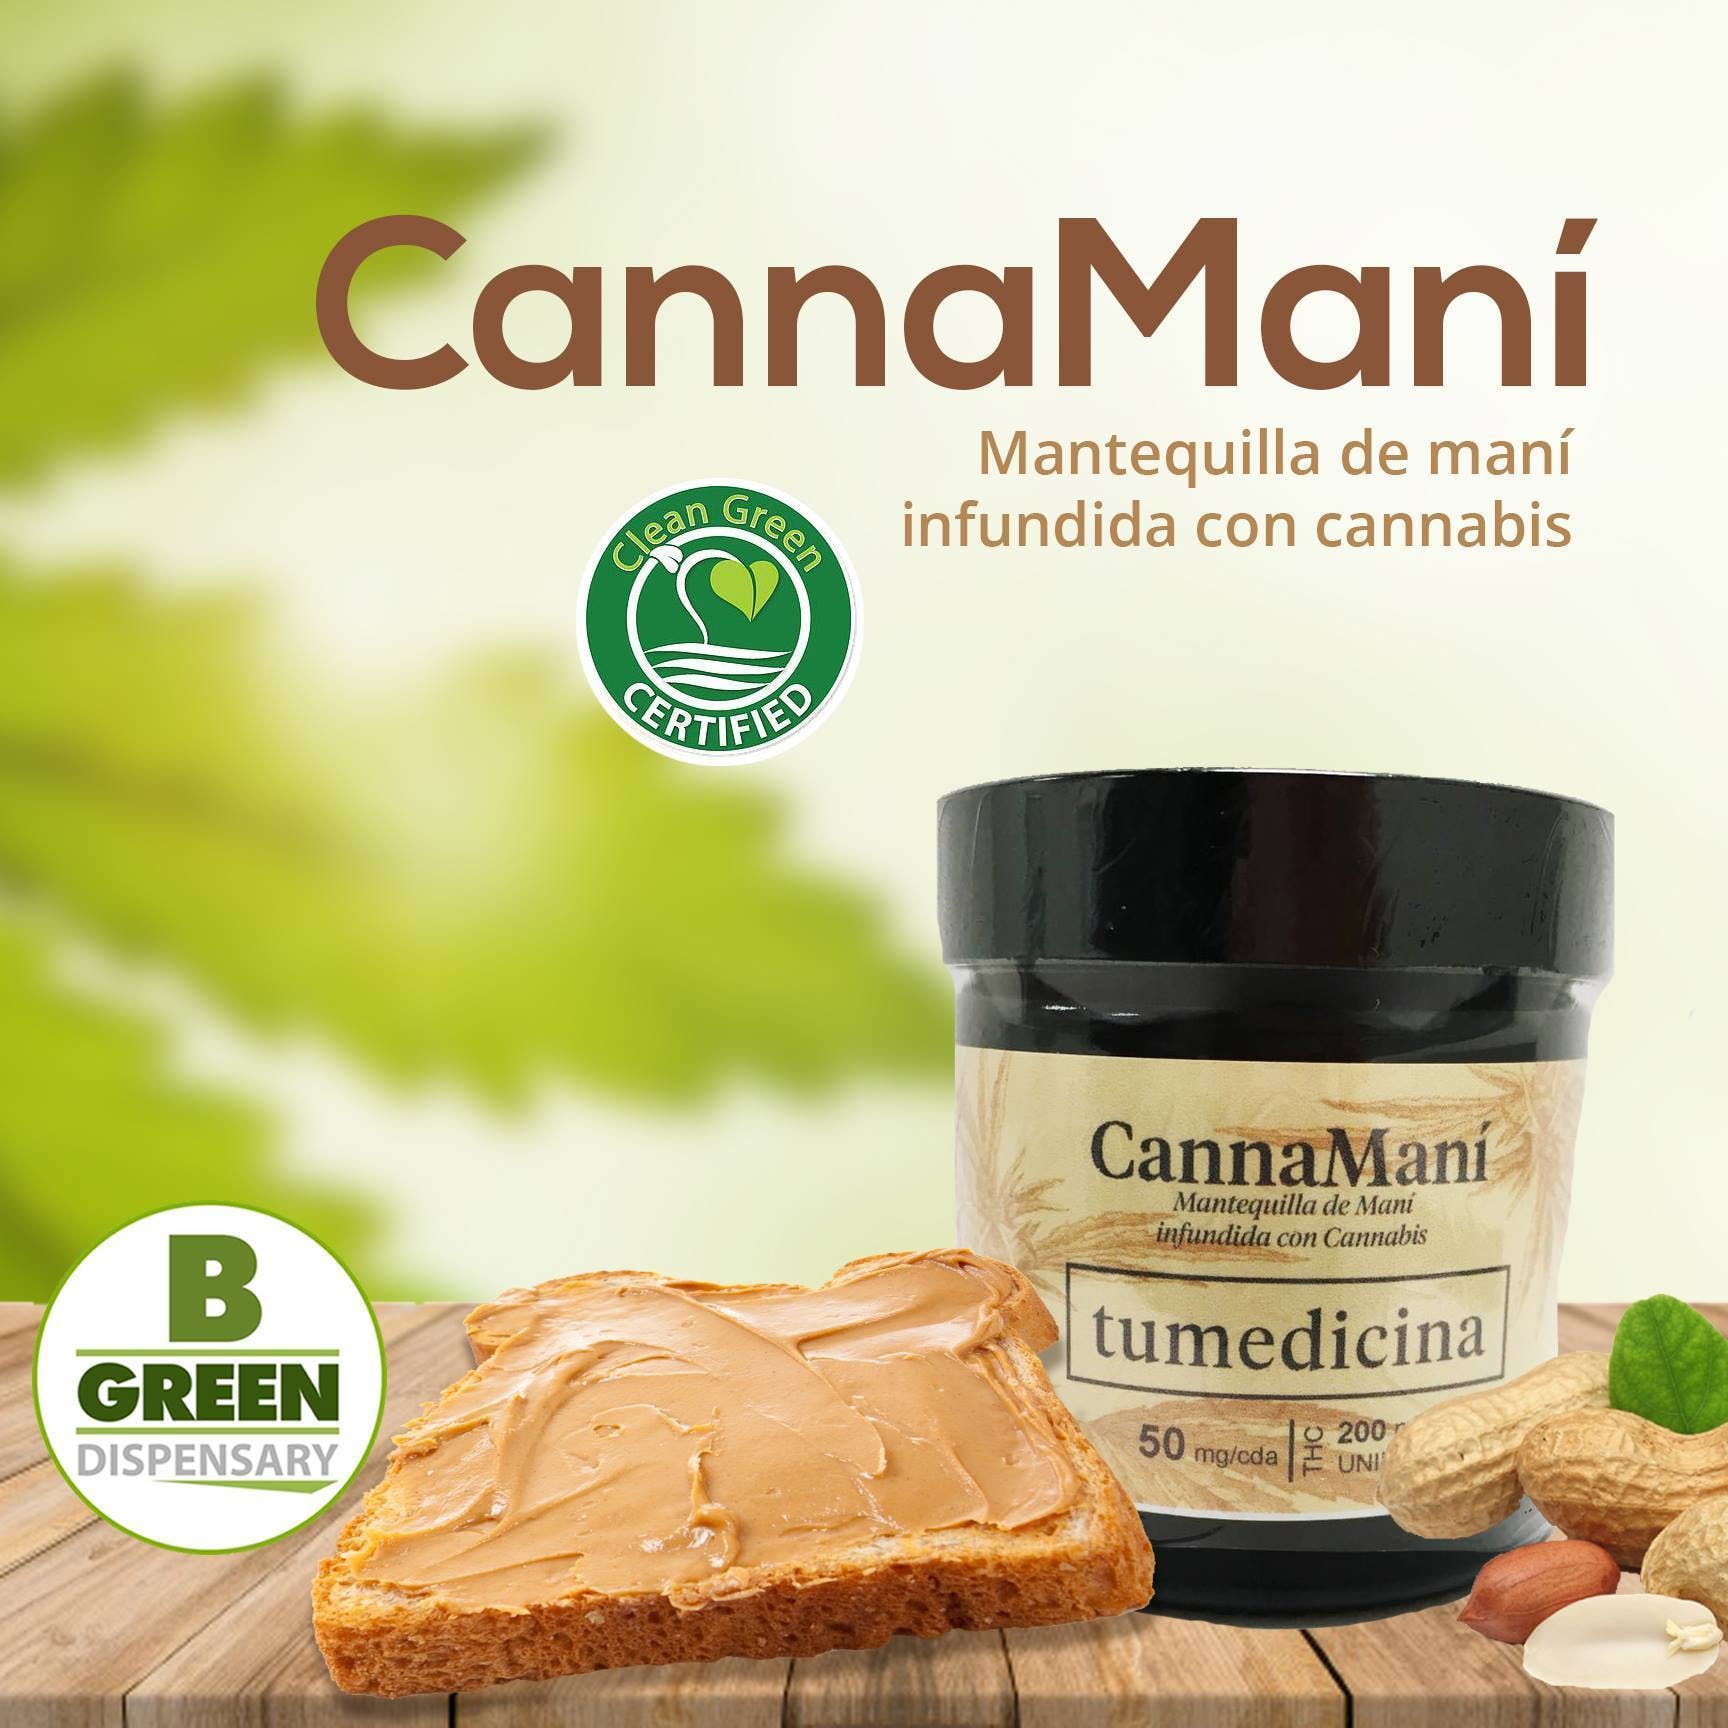 marijuana-dispensaries-bgreen-dispensary-in-mayaguez-canna-manas